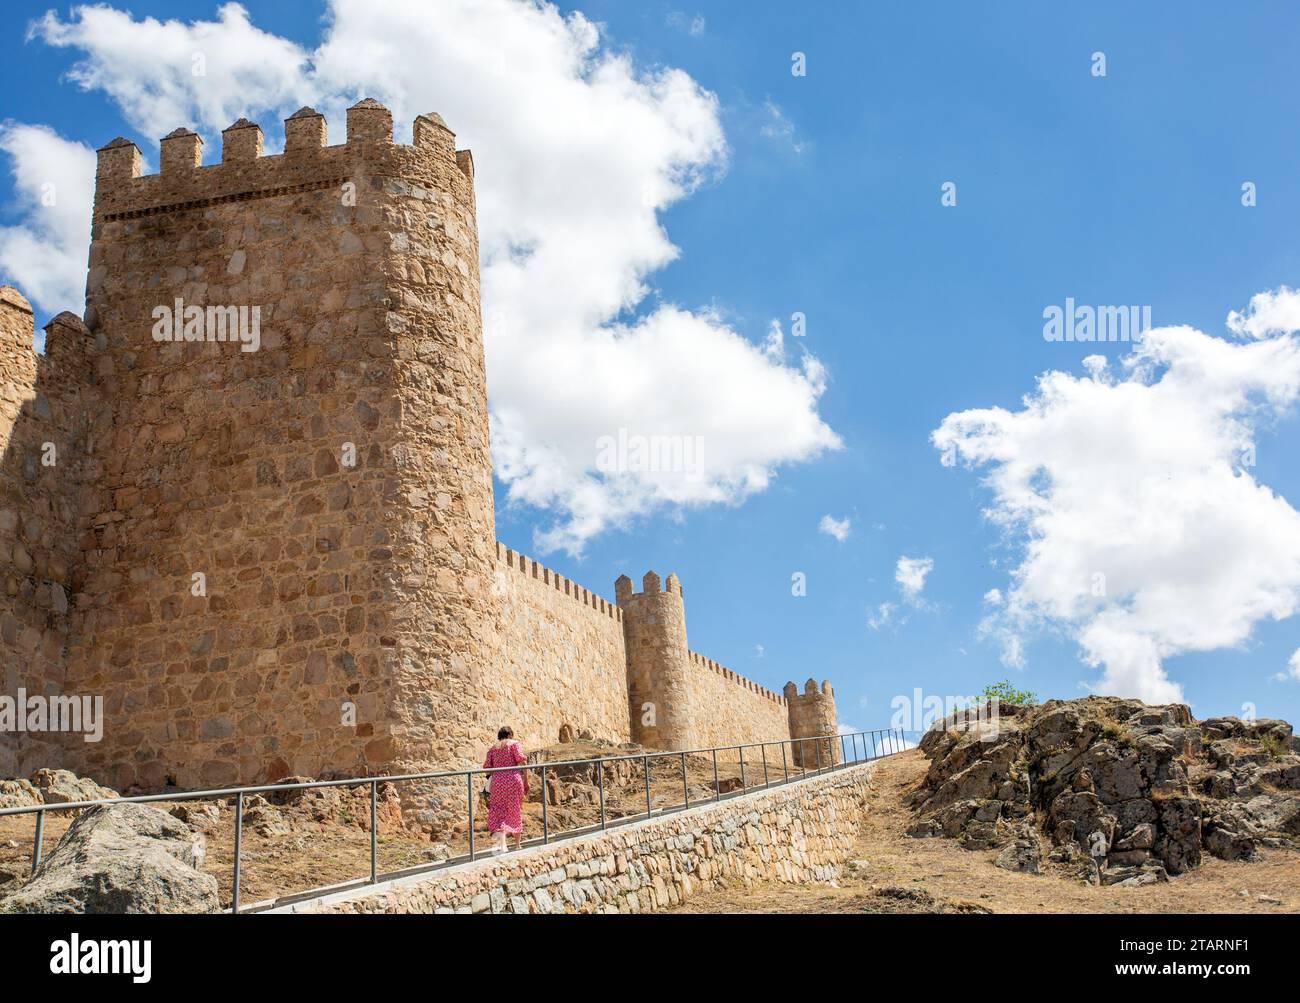 Donna che cammina lungo i bastioni nella città medievale fortificata spagnola di Aliva capitale della provincia spagnola di Avila in Castiglia e León in Spagna Foto Stock